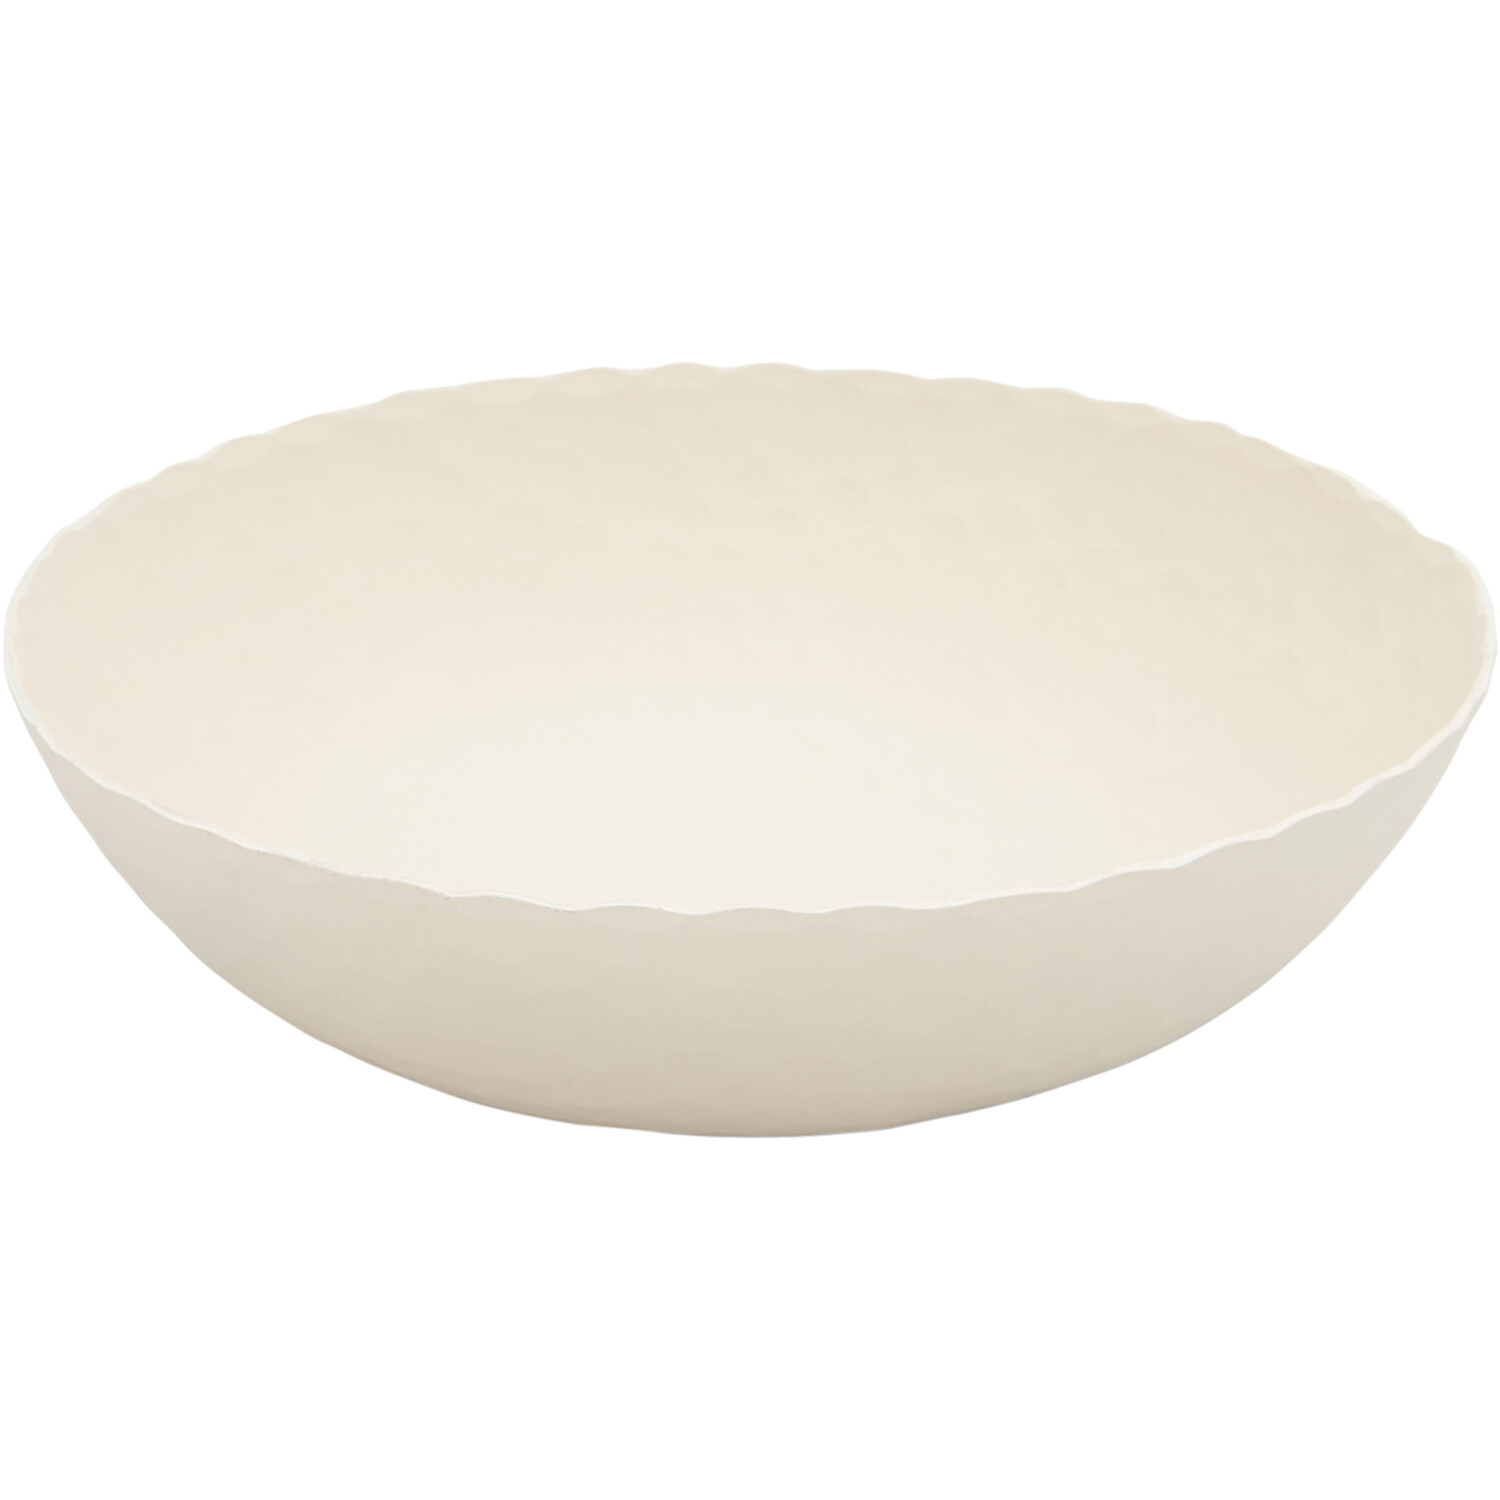 Aluminium Bowl - Cream Image 1